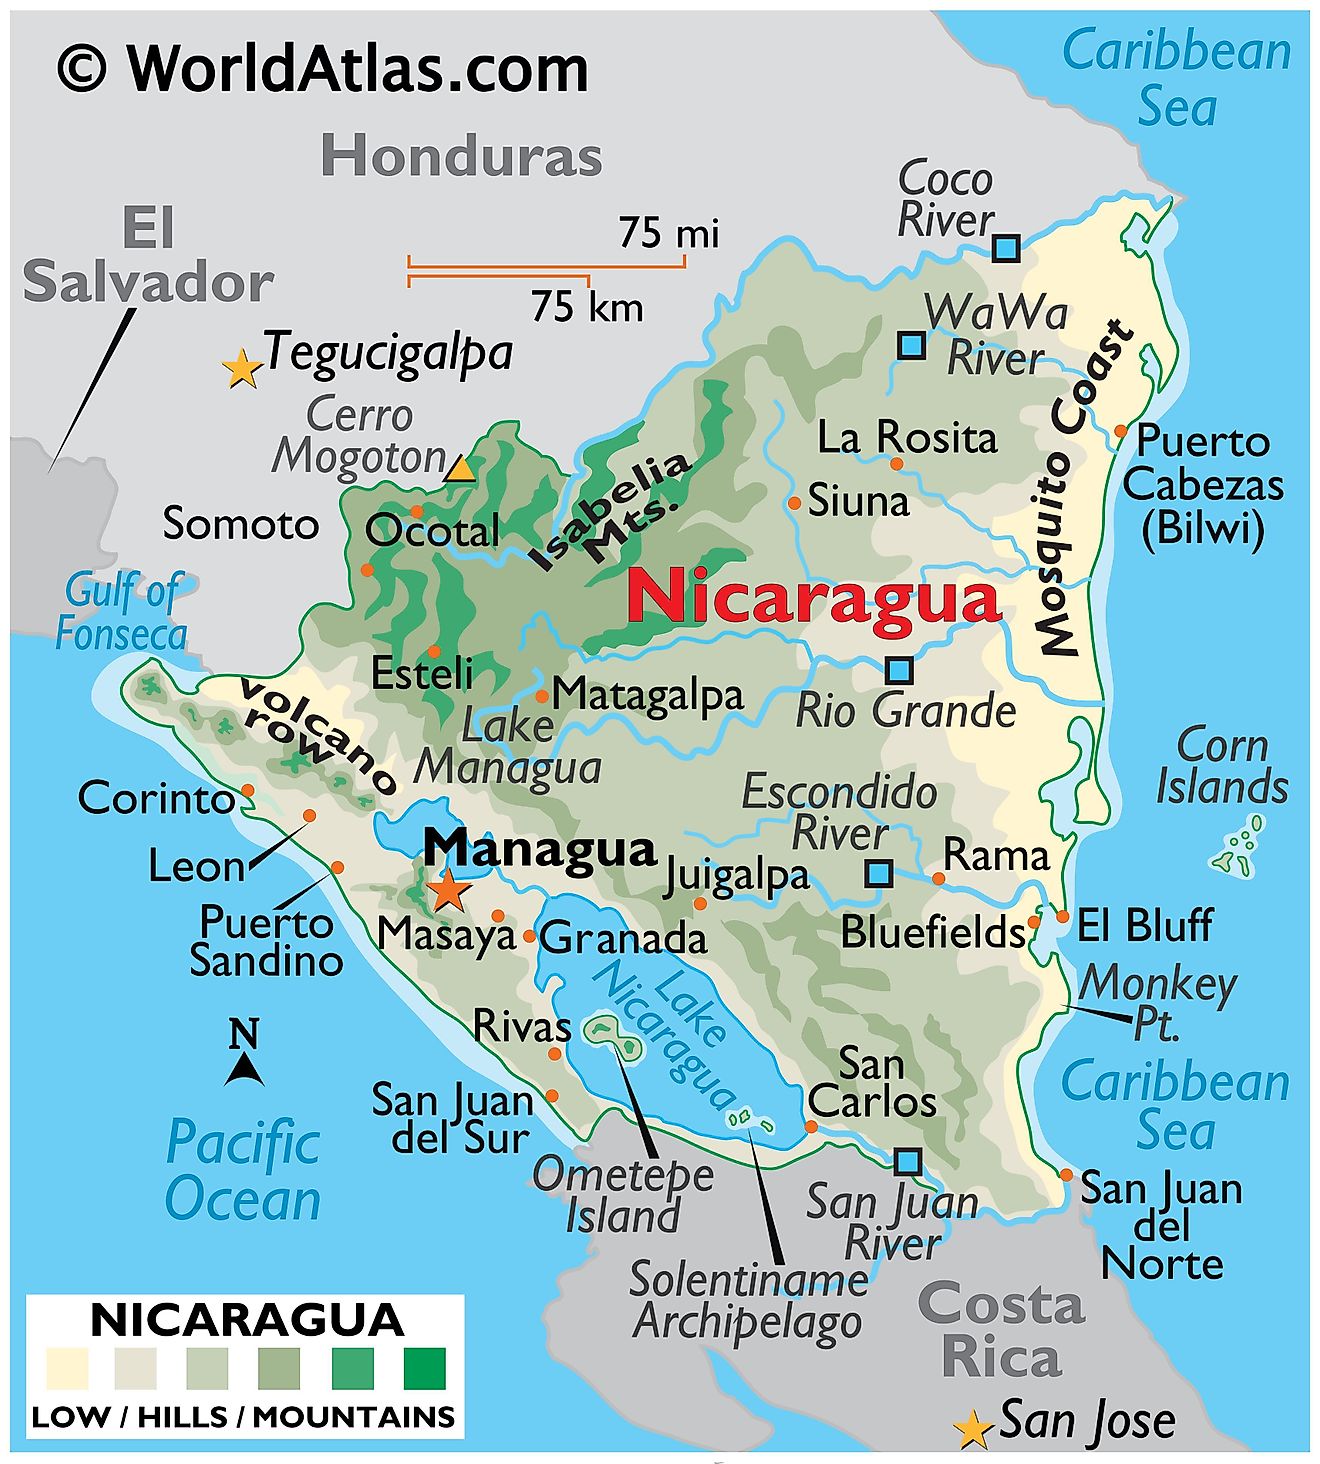 Mapa físico de Nicaragua que muestra el terreno, las montañas, los puntos extremos, la costa de los mosquitos, los volcanes, los ríos, los lagos, las principales ciudades, las fronteras internacionales, etc.